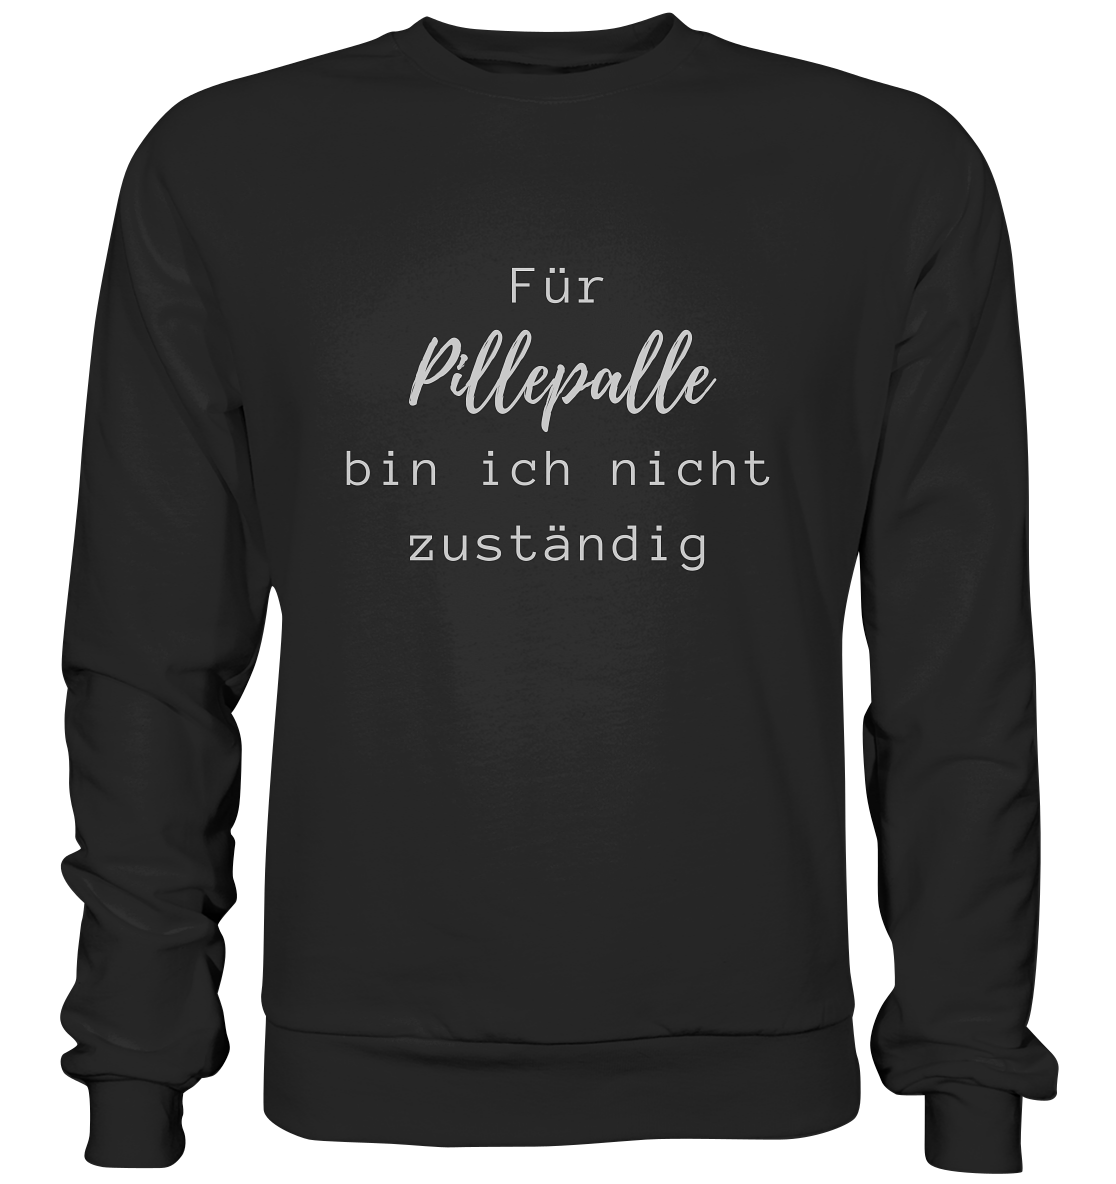 Sweater, Rundhals, mit weißem Aufdruck "Für Pillepalle bin ich nicht zuständig", schwarz